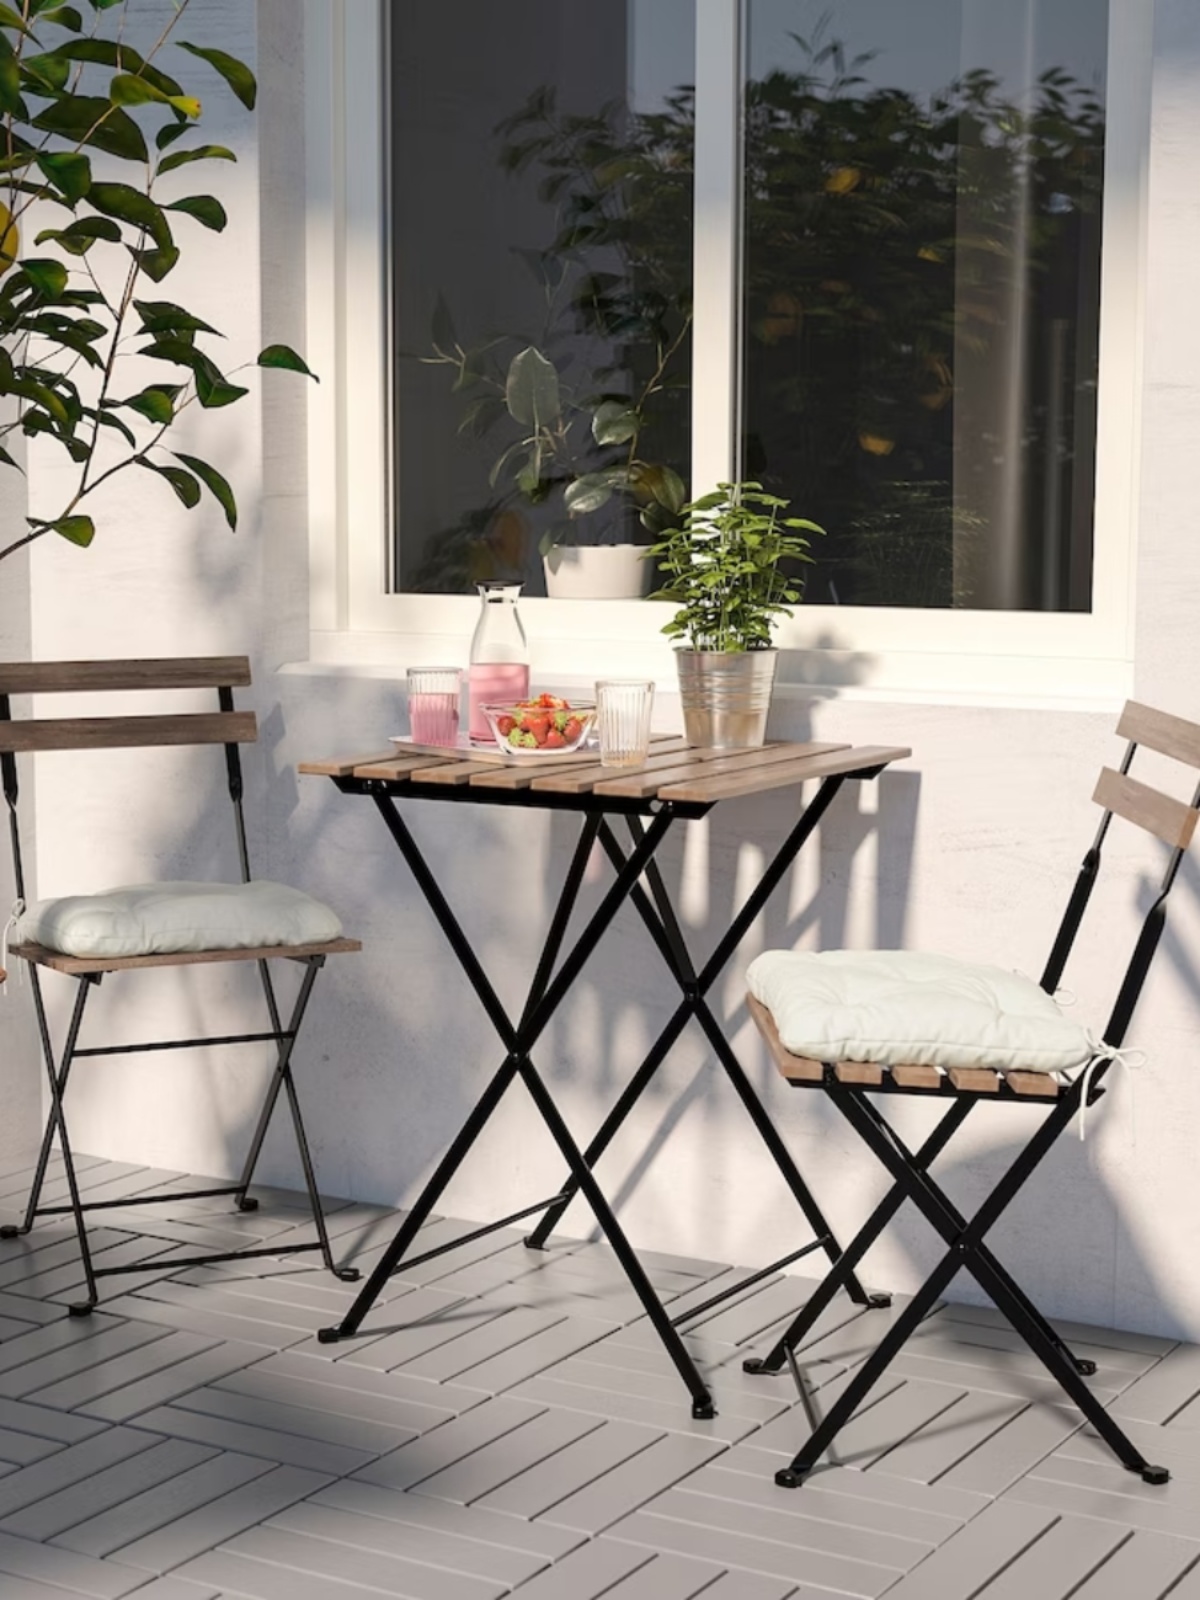 特價戶外鐵藝摺疊桌椅組簡約現代風格適合花園陽臺奶茶店咖啡店等休閒空間